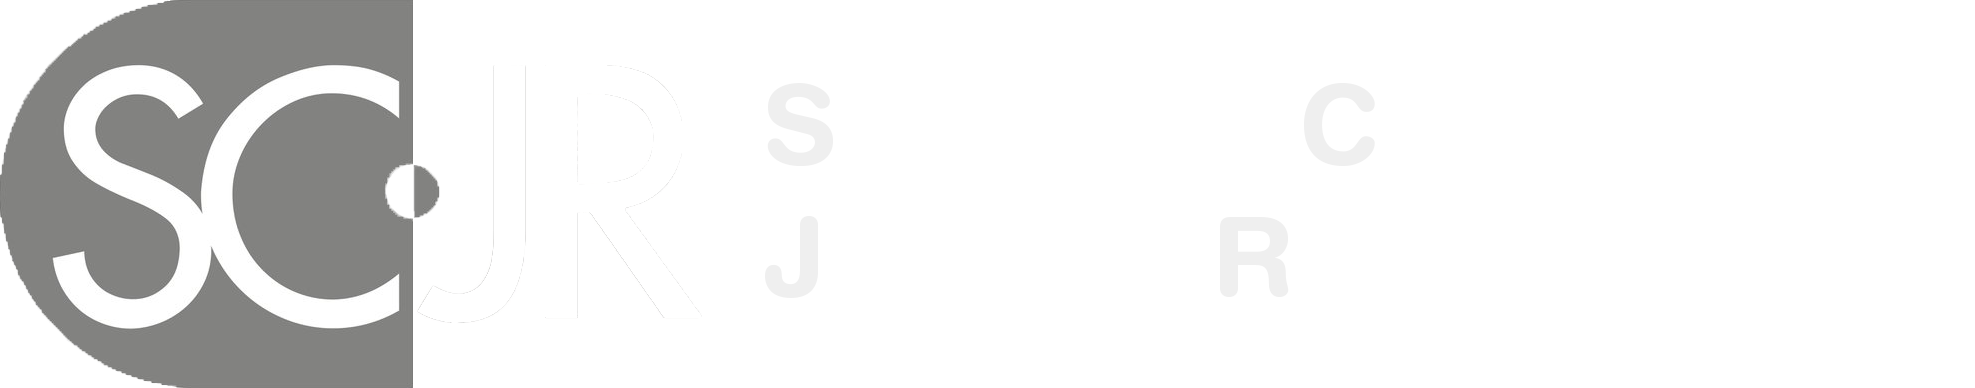 Sociedad Científica de Justicia Restaurativa